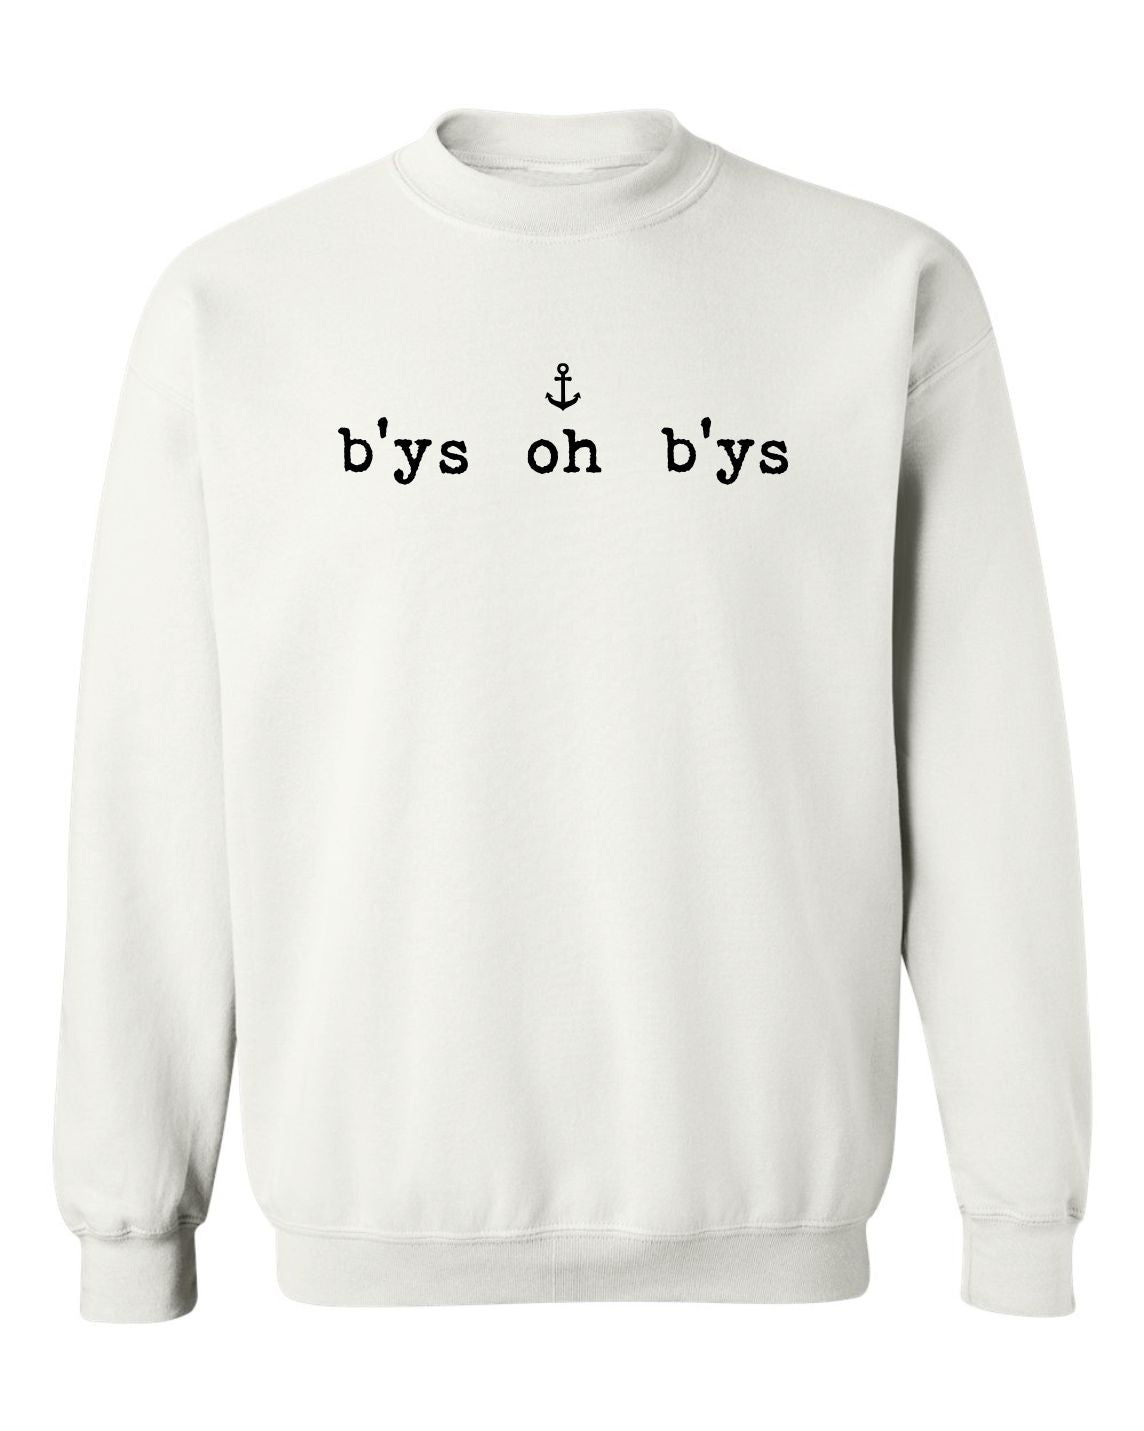 "B'ys Oh B'ys" Unisex Crewneck Sweatshirt